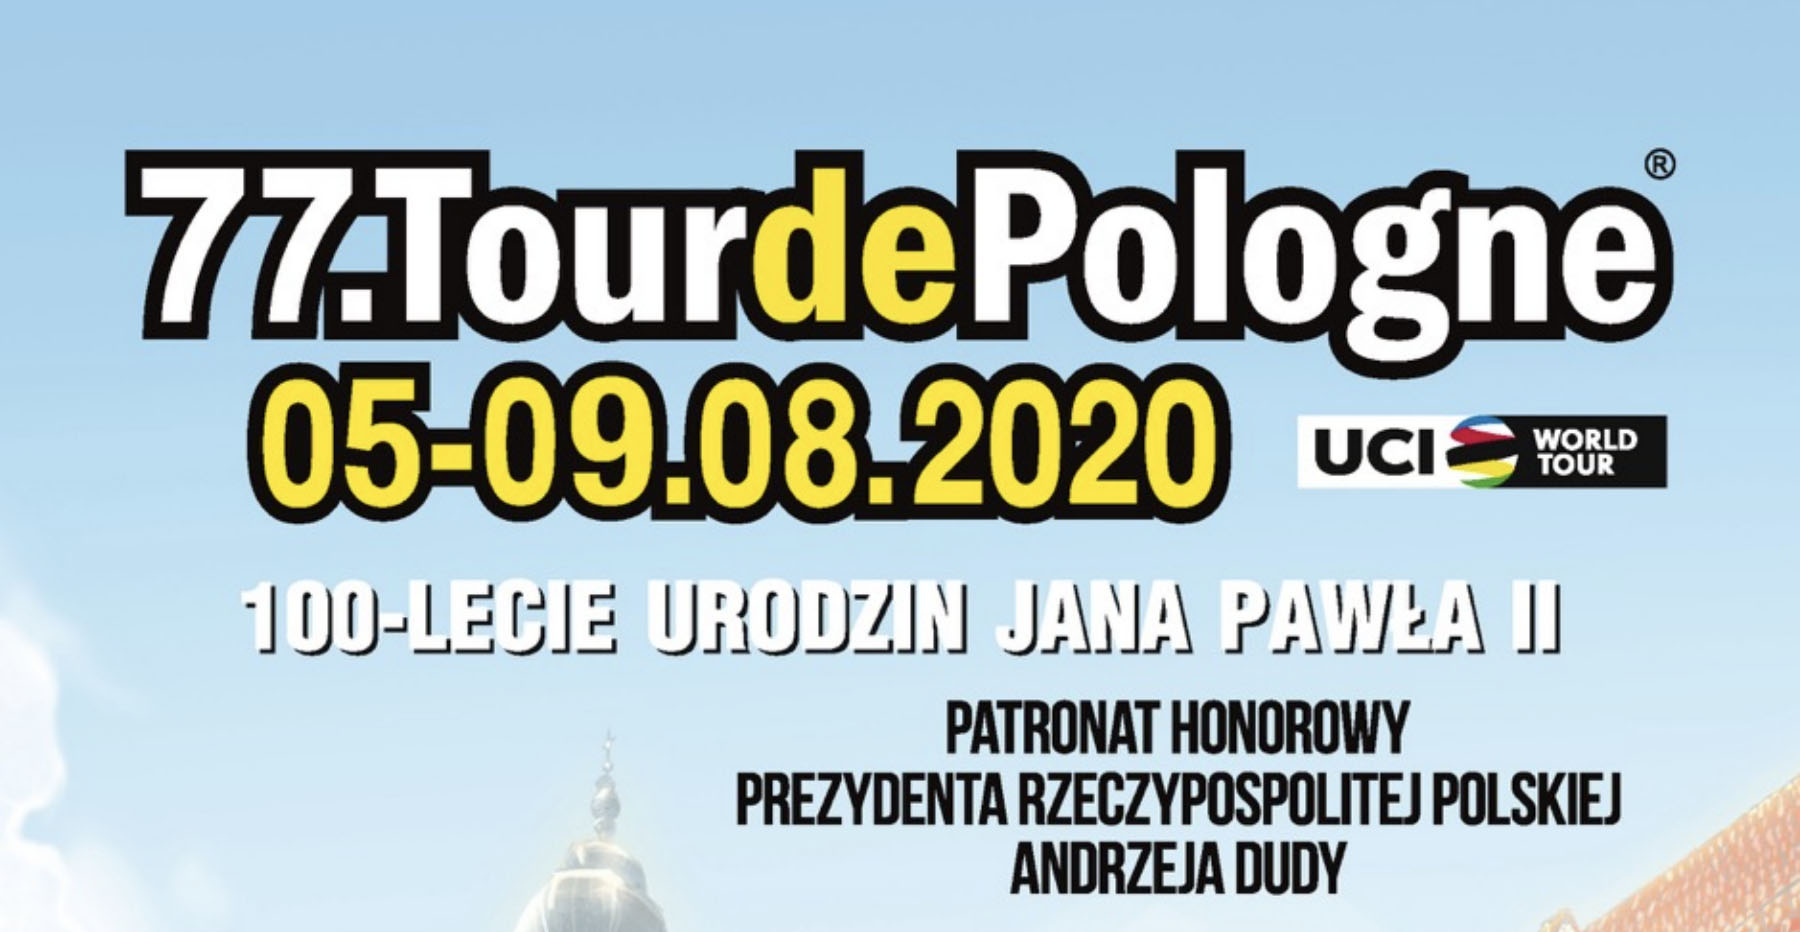 Tour de Pologne 2020